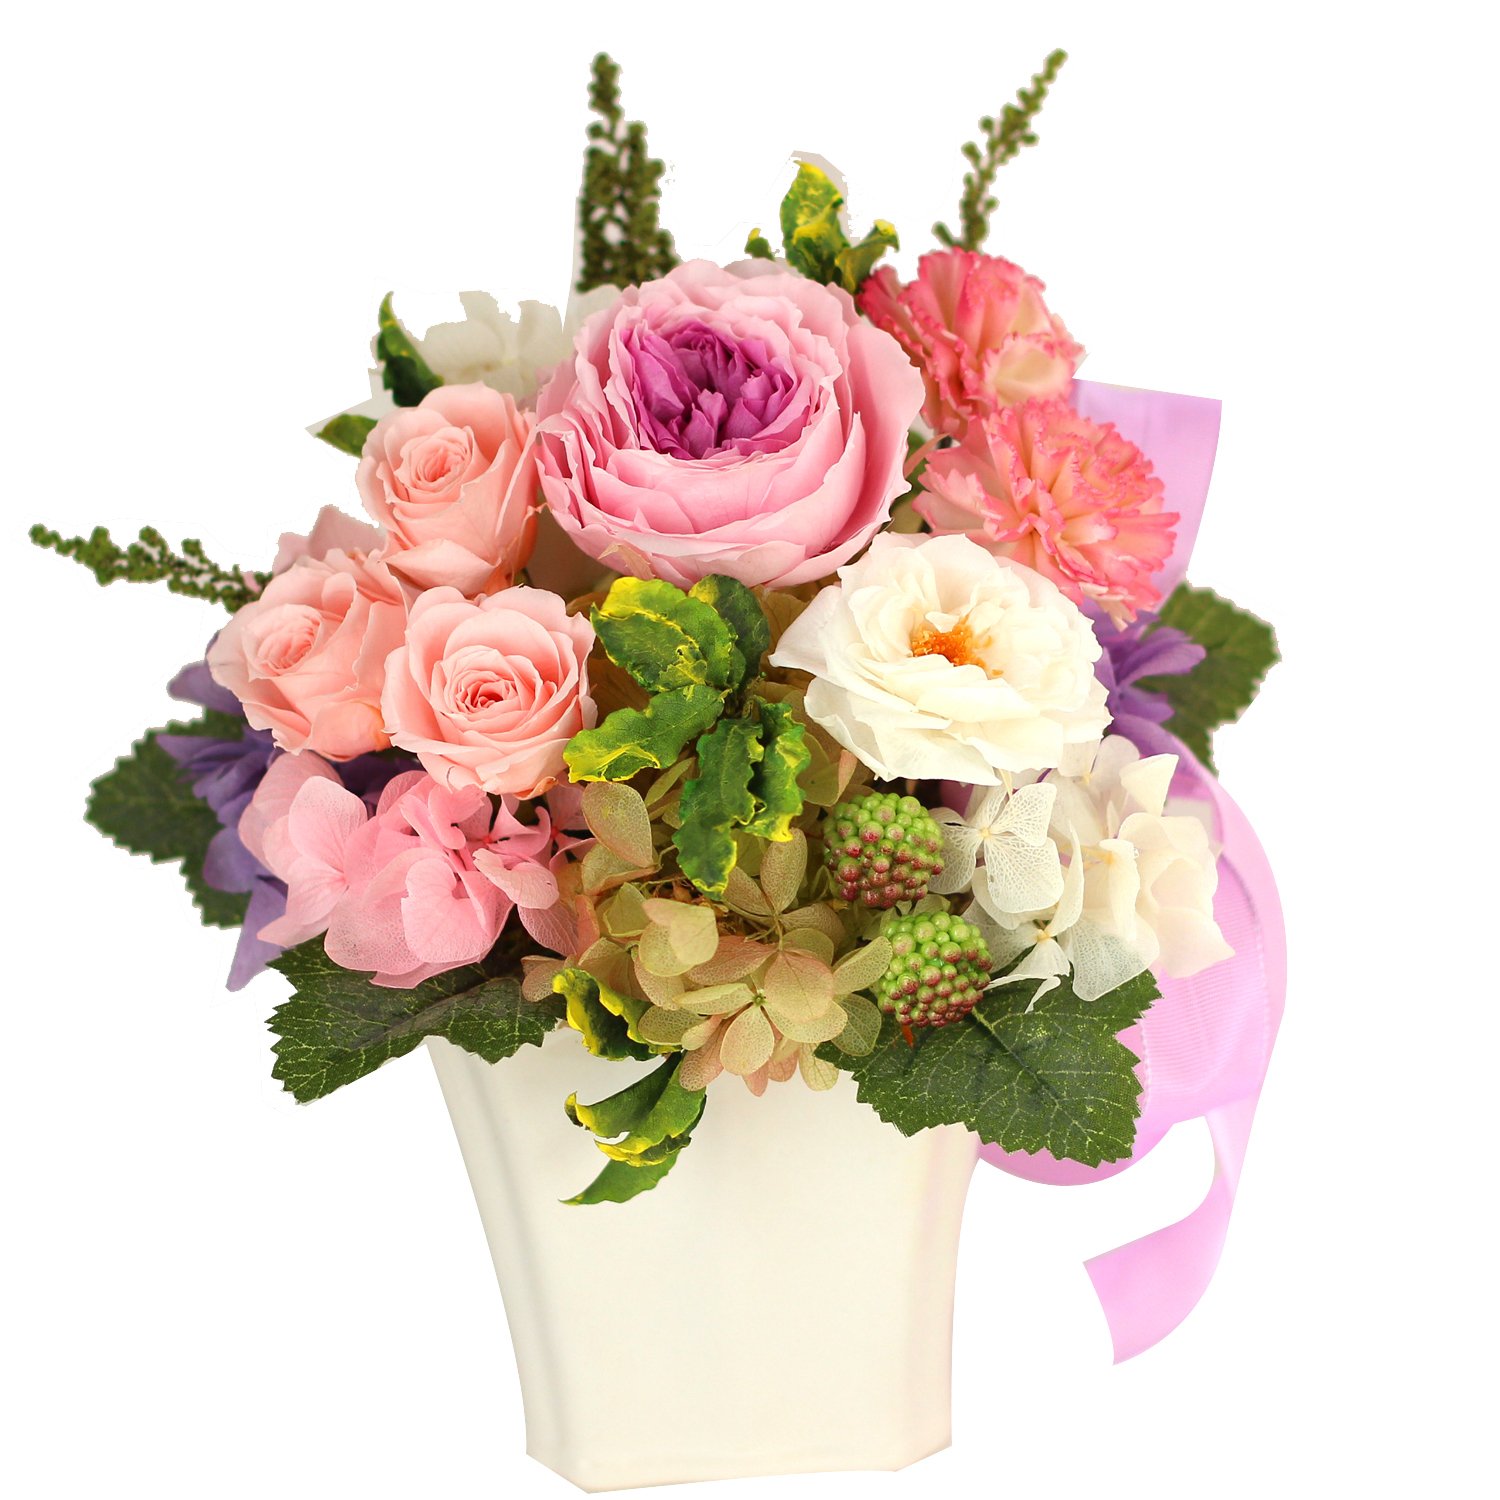 Azurosa(アズローザ) プリザーブドフラワー ギフト 母の日のプレゼント人気 枯れない花 オールドローズ ミニバラ ガーデンローズ アジサ